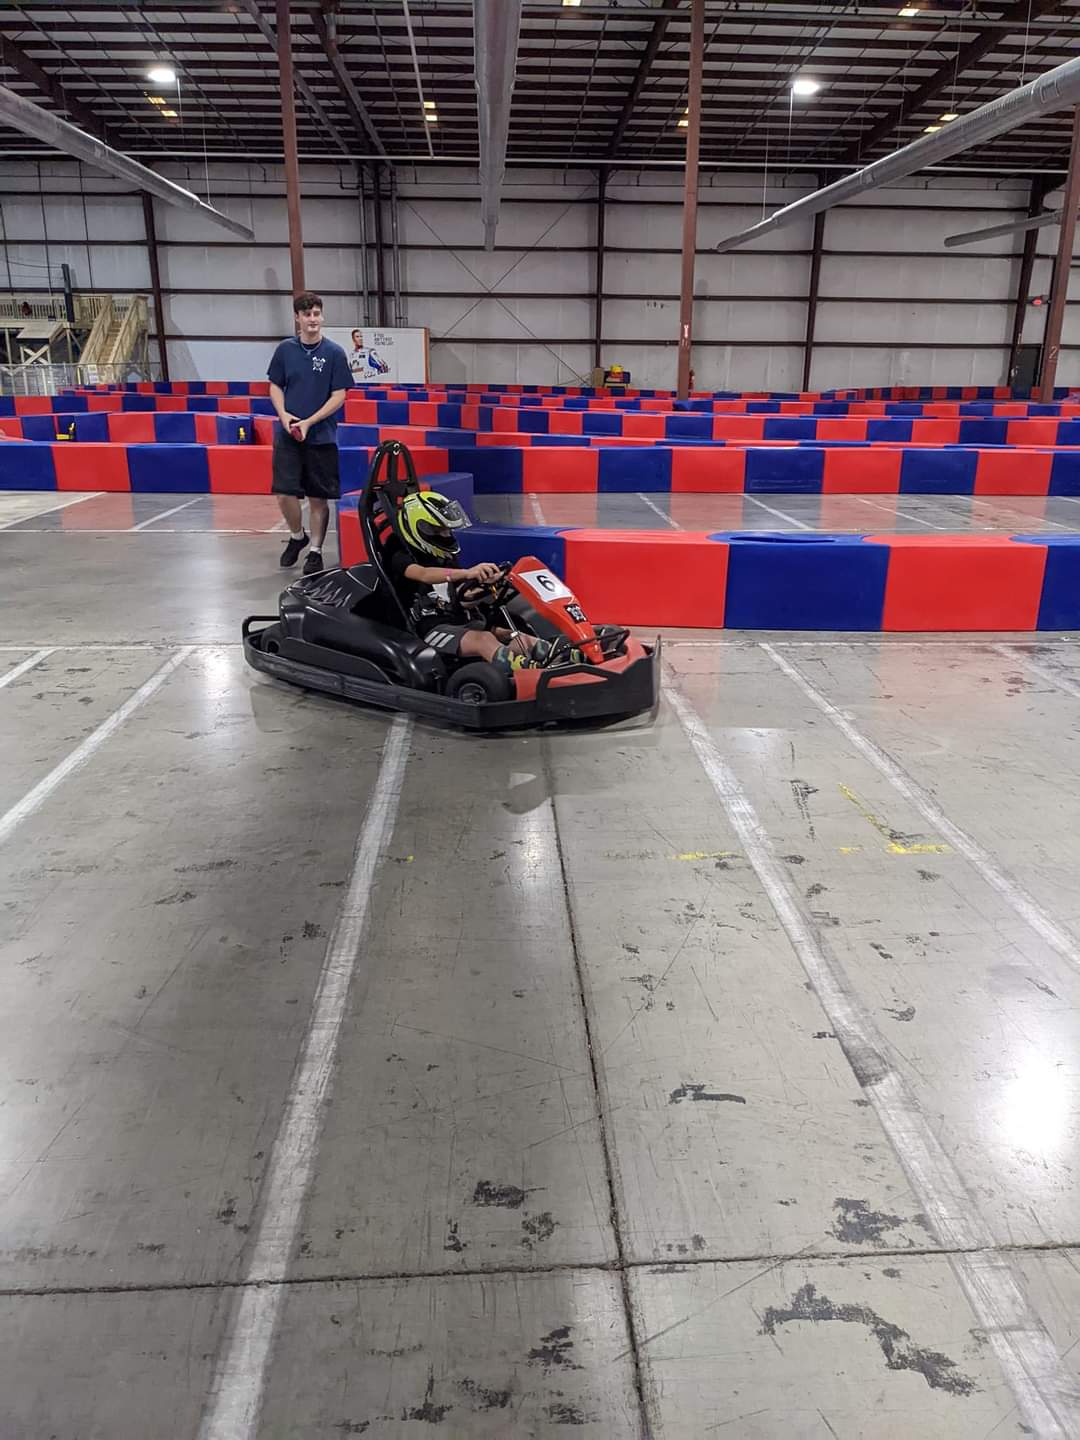 High Speed Go-Kart Racing